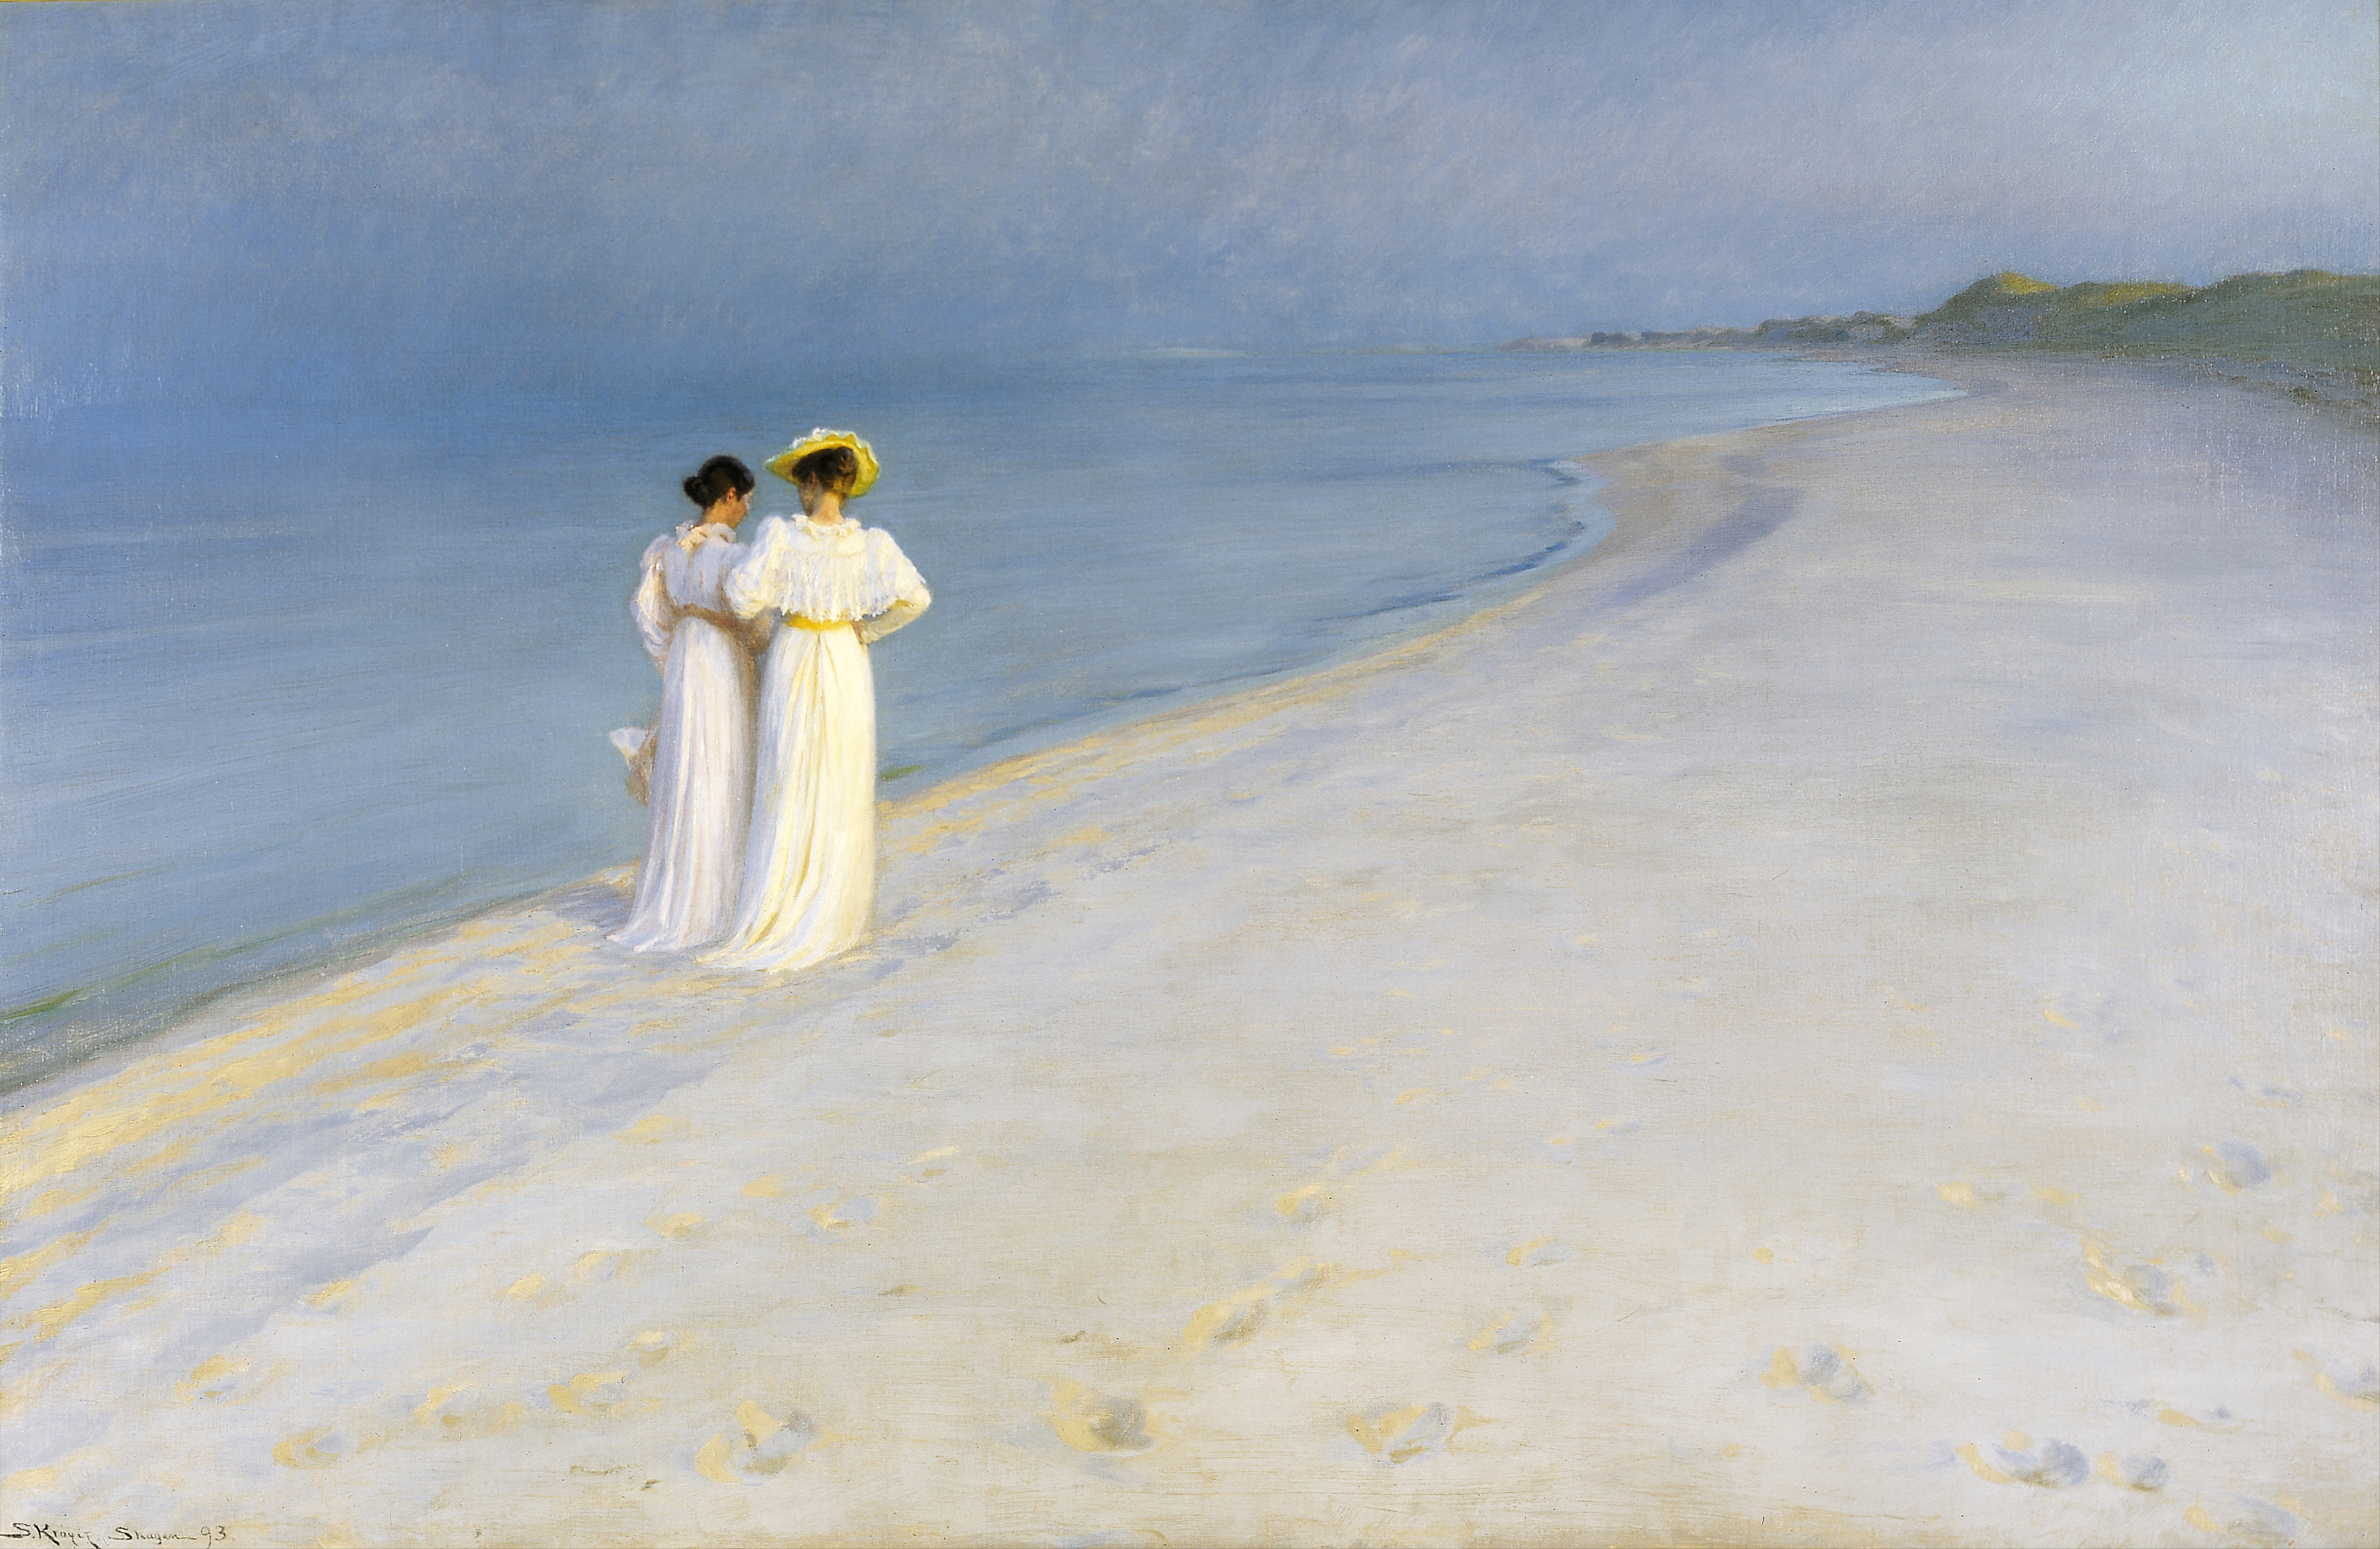 ‏Tarde de verano en la playa de Skagen's South, Anna Ancher y Marie Krøyer caminando juntas by P.S. Krøyer - 1893 Skagens Kunstmuseer